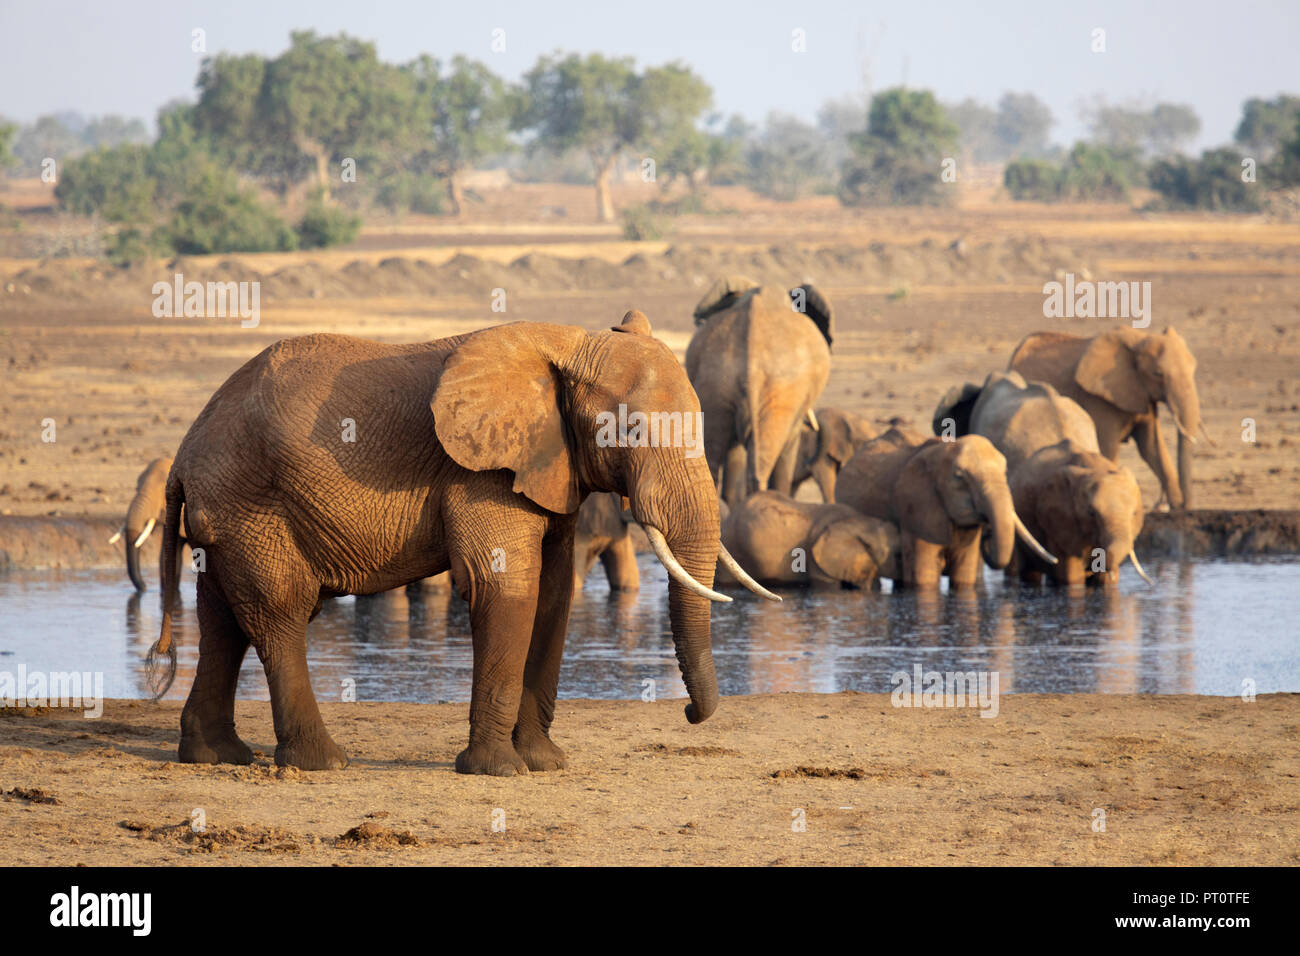 Parco nazionale orientale di tsavo, Kenya, Africa: un branco di elefanti africani in corrispondenza di un foro di irrigazione sulla savana secca nel sole del pomeriggio Foto Stock